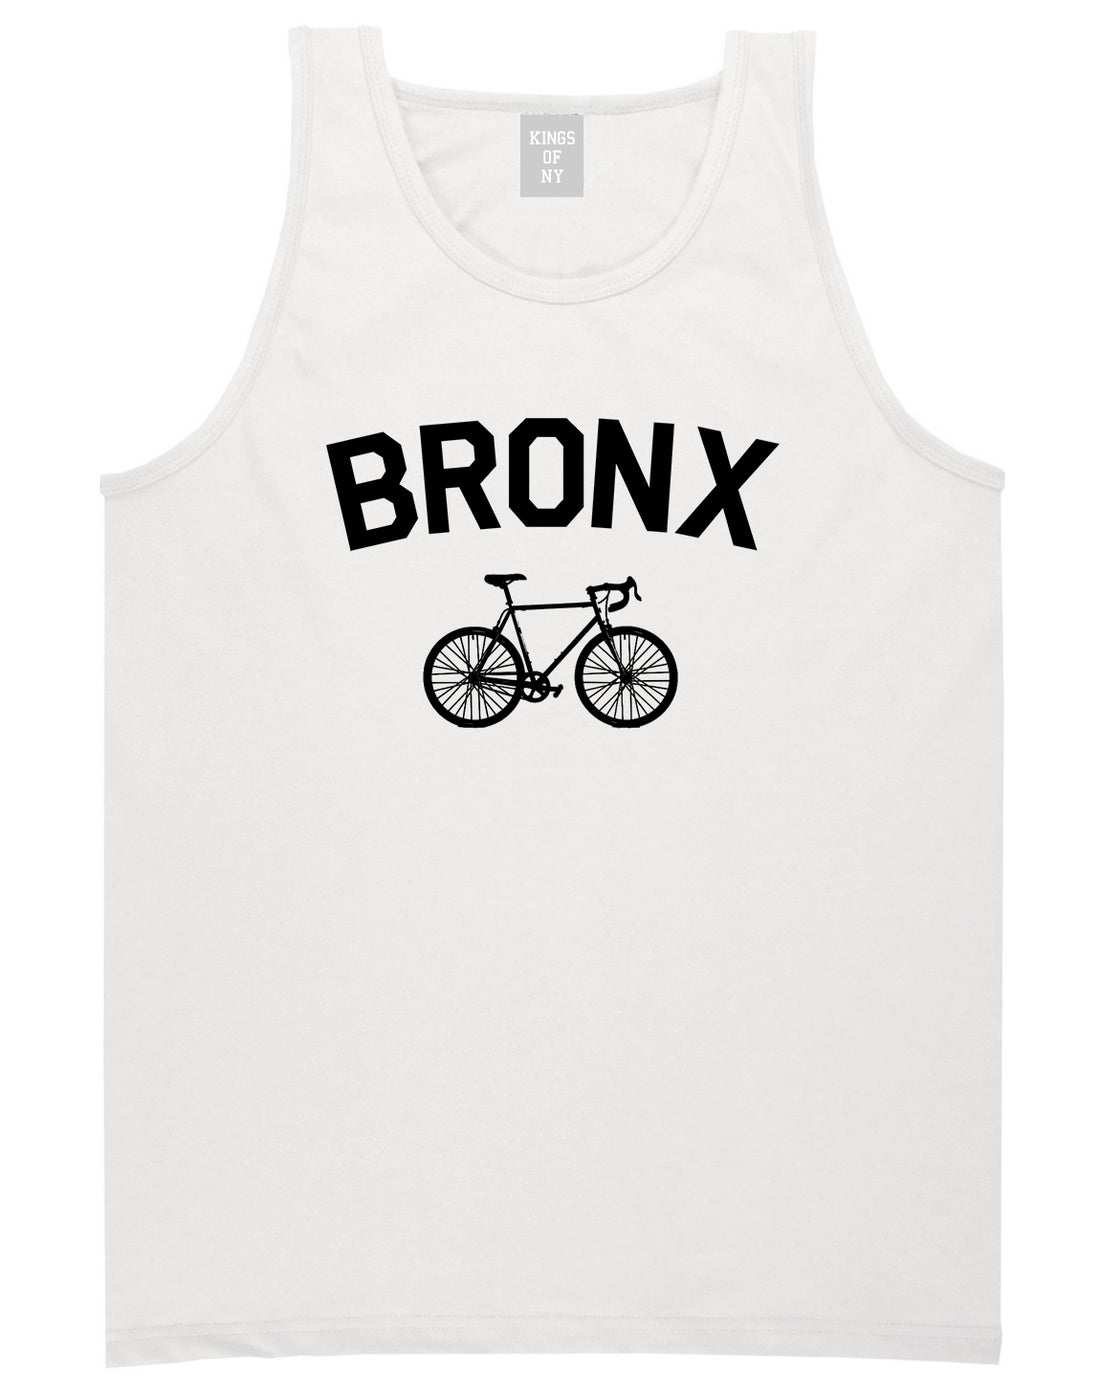 Bronx Vintage Bike Cycling Mens Tank Top T-Shirt White